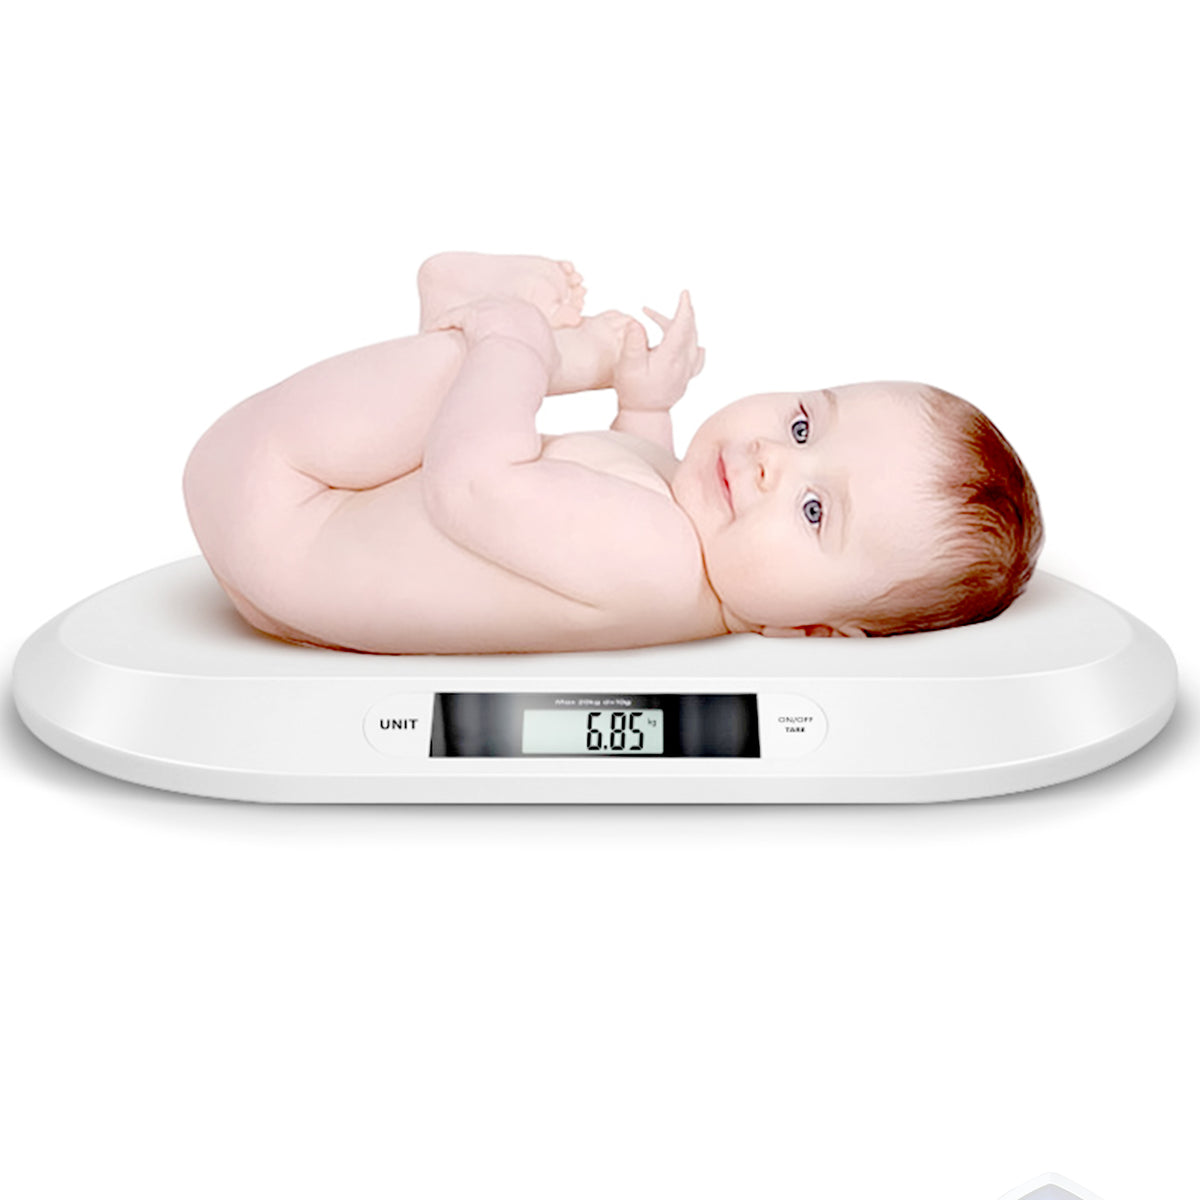 Baby Weighing Scale - WS032, Baby Weighing Scale - WS032 Suppliers, Baby  Weighing Scale - WS032 Manufacturer